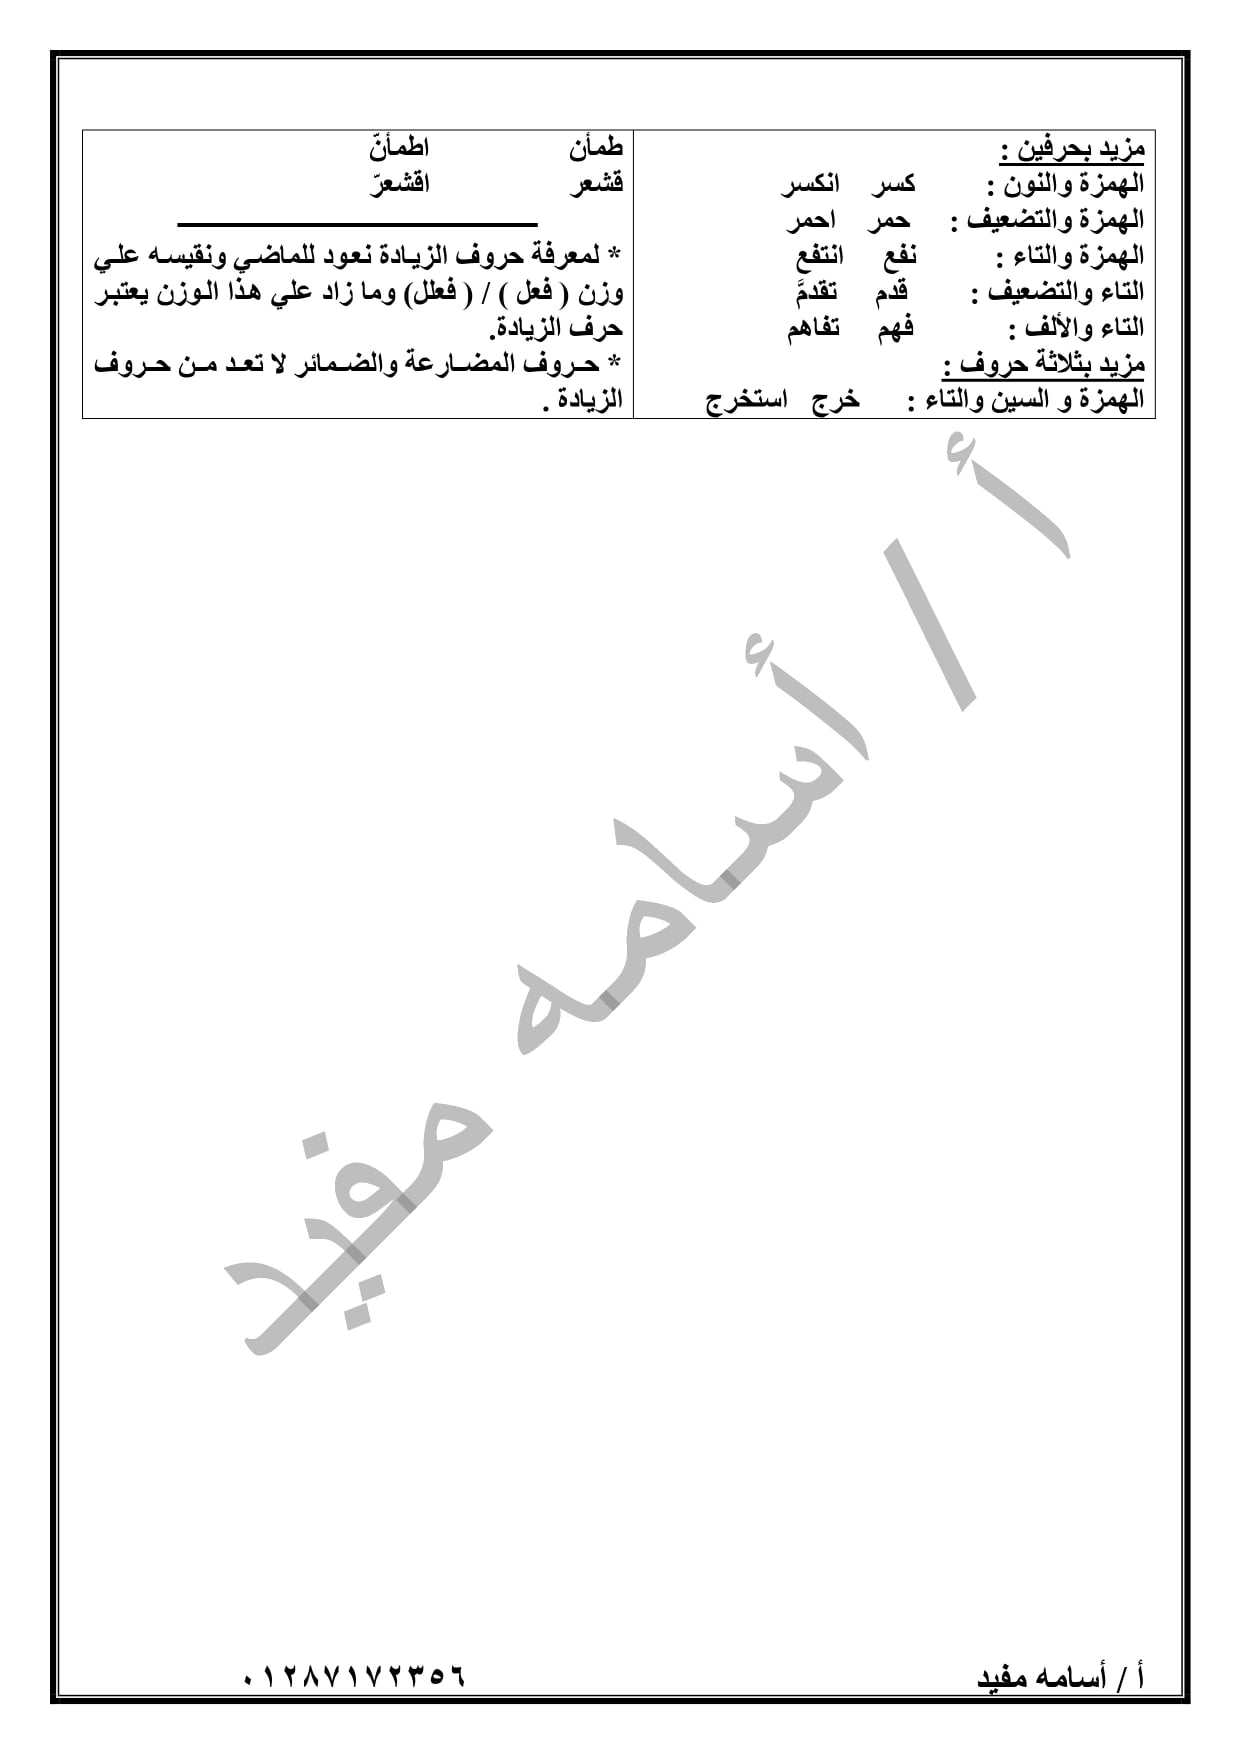 ملخص منهج شهر ابريل لغة عربية ( قراءة + نصوص + قصة + نحو ) للصف الثانى الاعدادى ترم ثاني 17